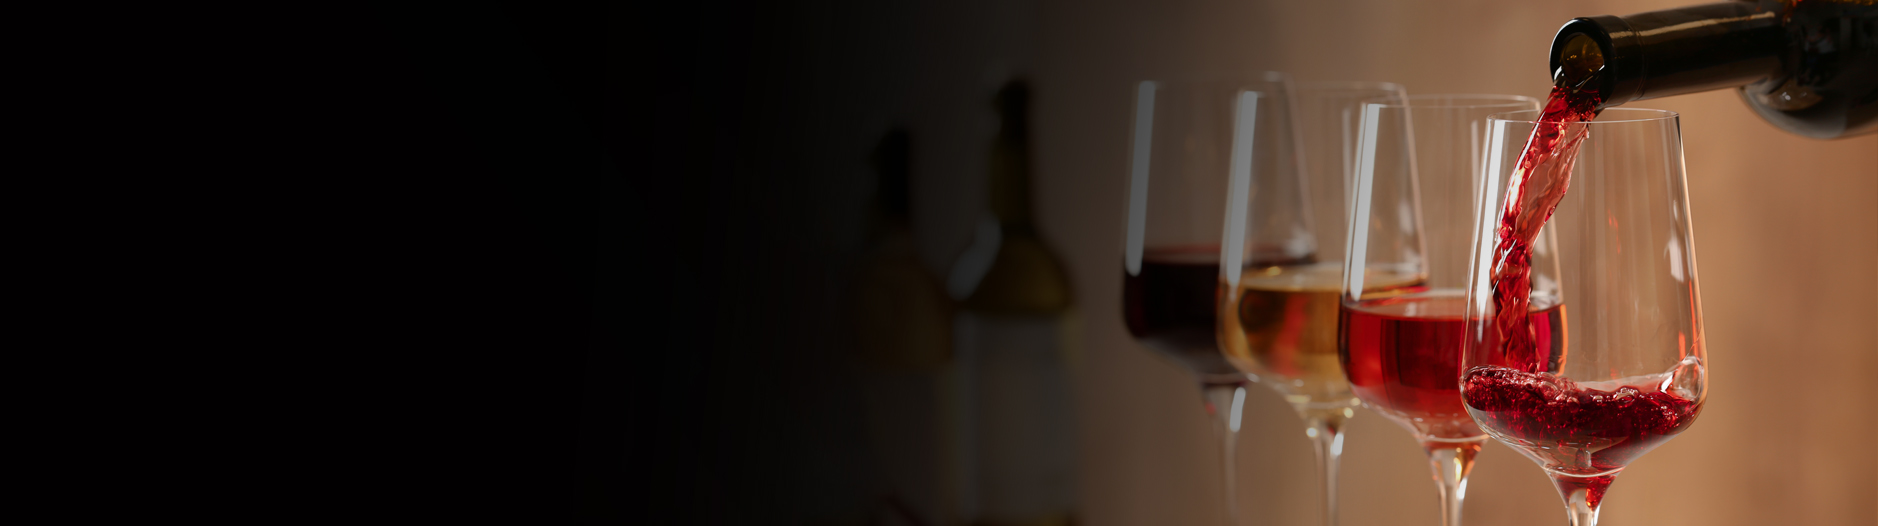 Можно ли ставить вино в пластиковой таре на брожение